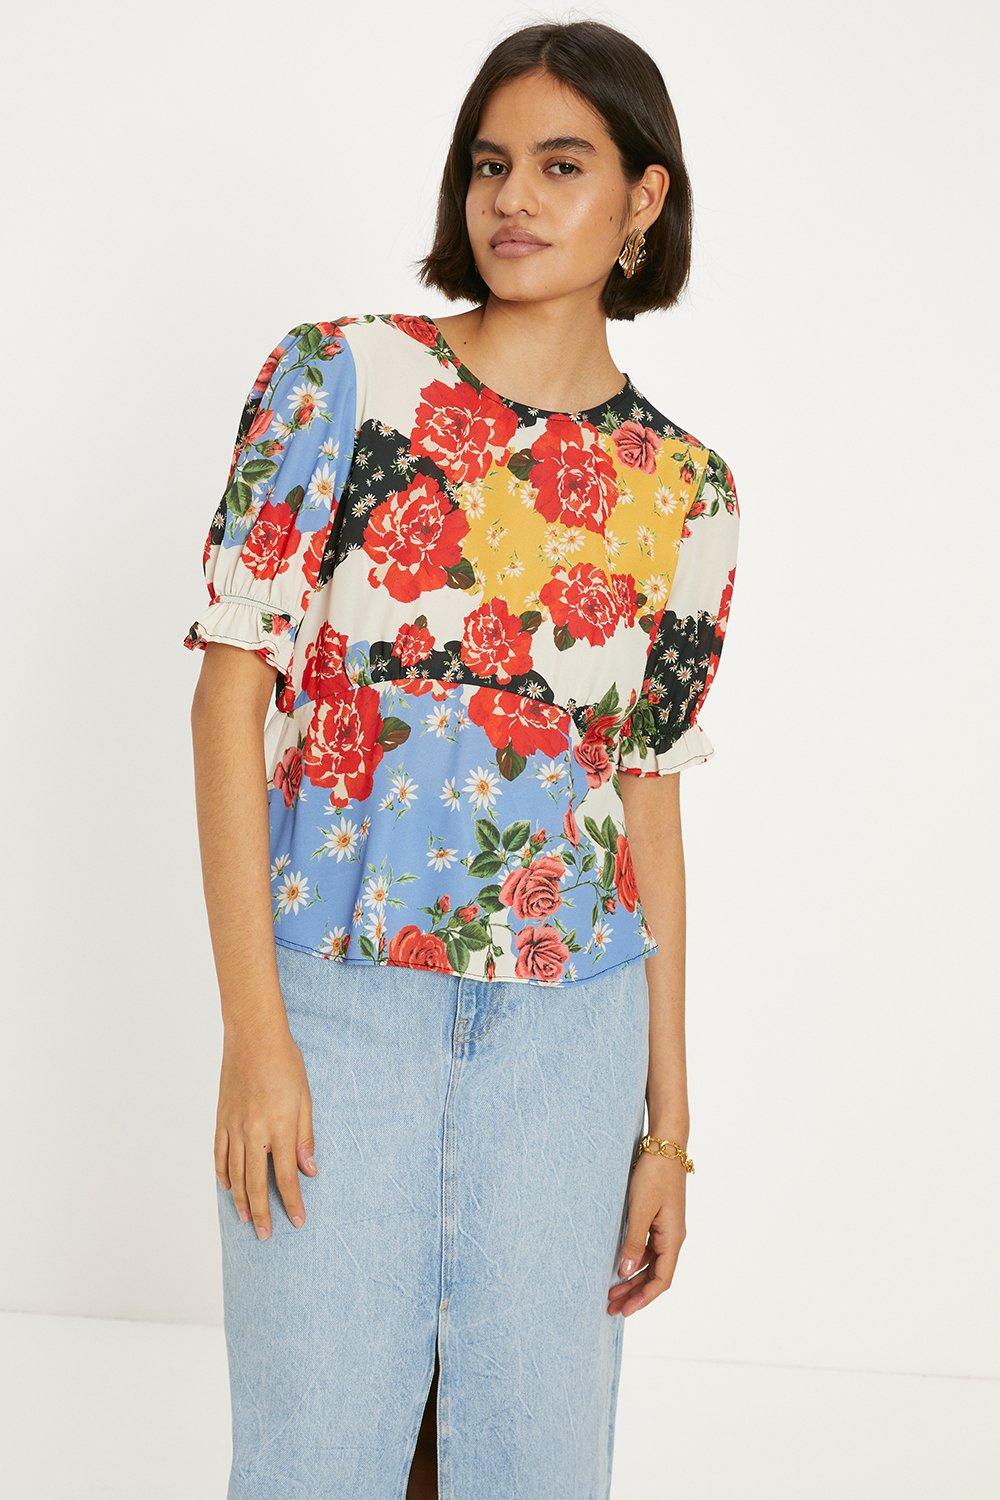 Чайная блузка с короткими рукавами и цветочным принтом Oasis, мультиколор блузка с цветочным принтом и короткими рукавами 36 fr 42 rus синий